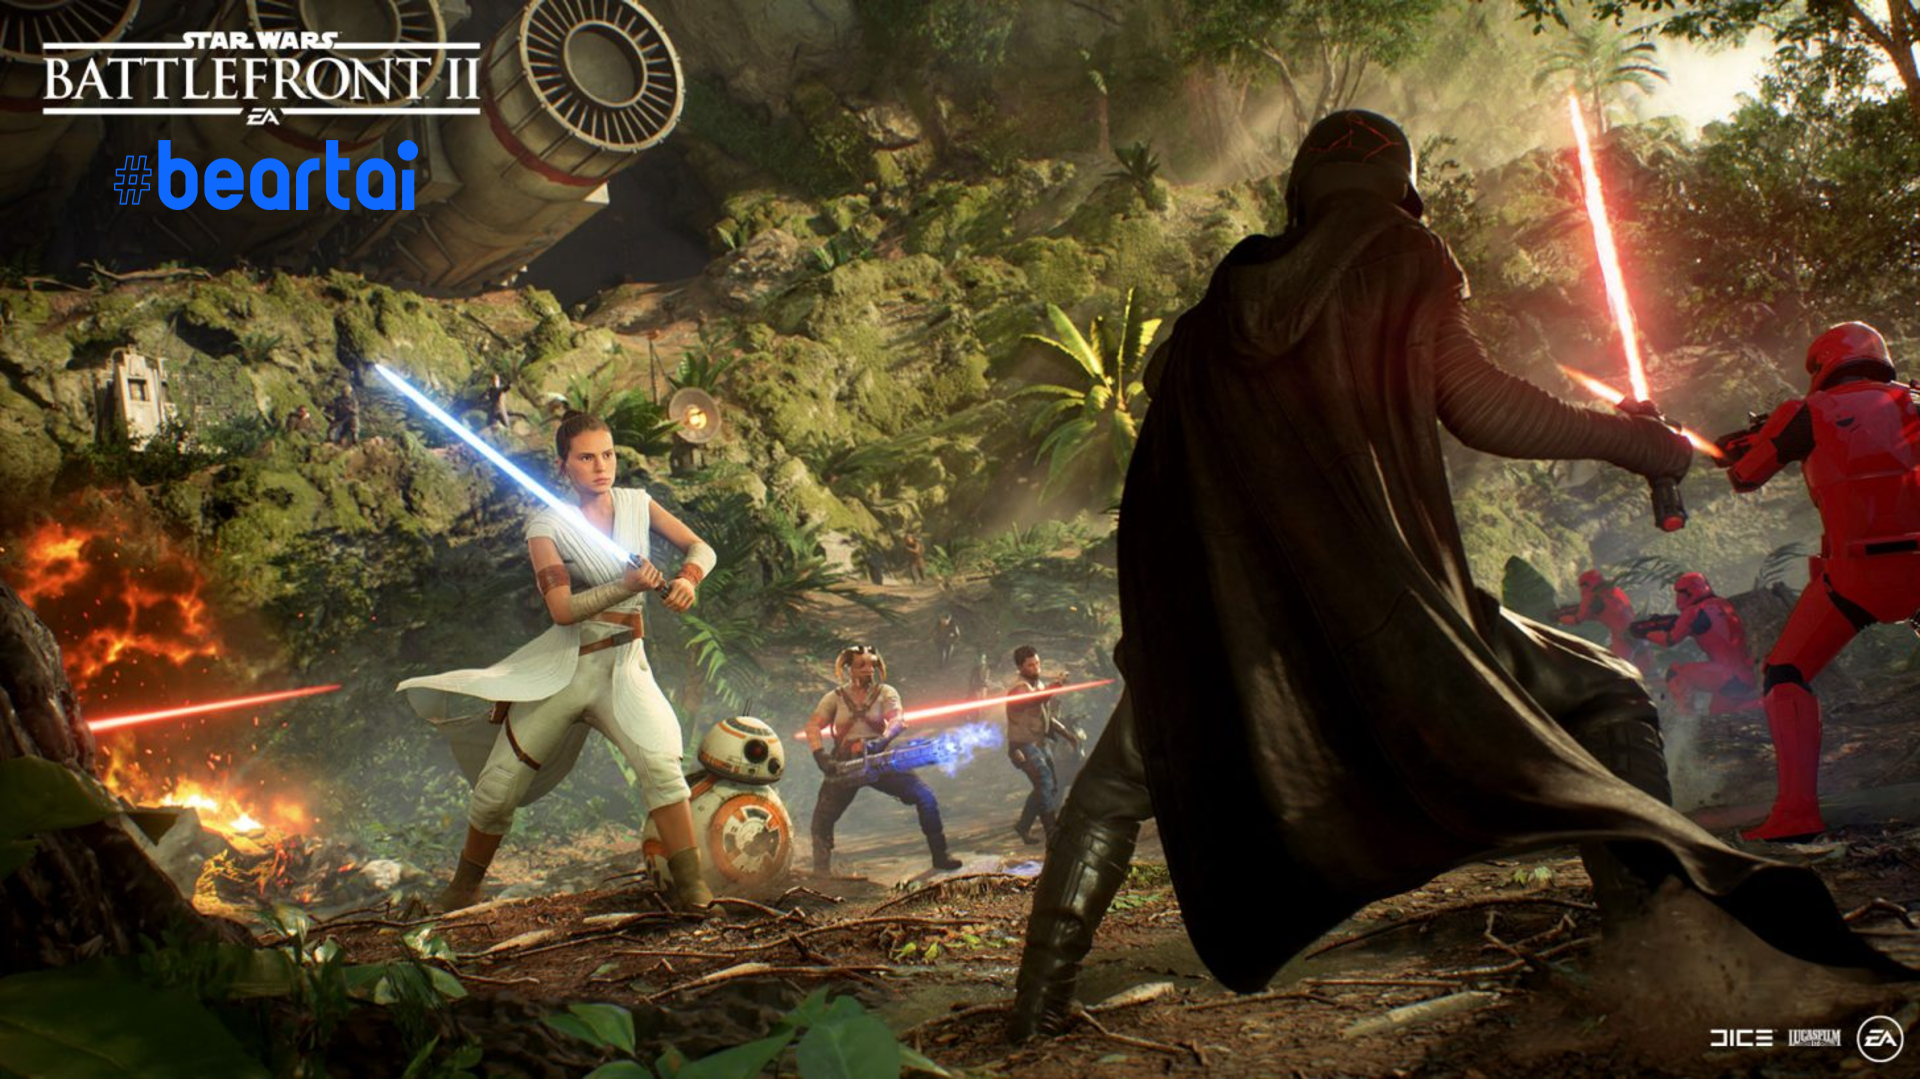 EA เผย หลังแจกฟรี Star Wars Battlefront 2 ทำให้มีผู้เล่นใหม่เพิ่มขึ้นถึง 19 ล้านคน